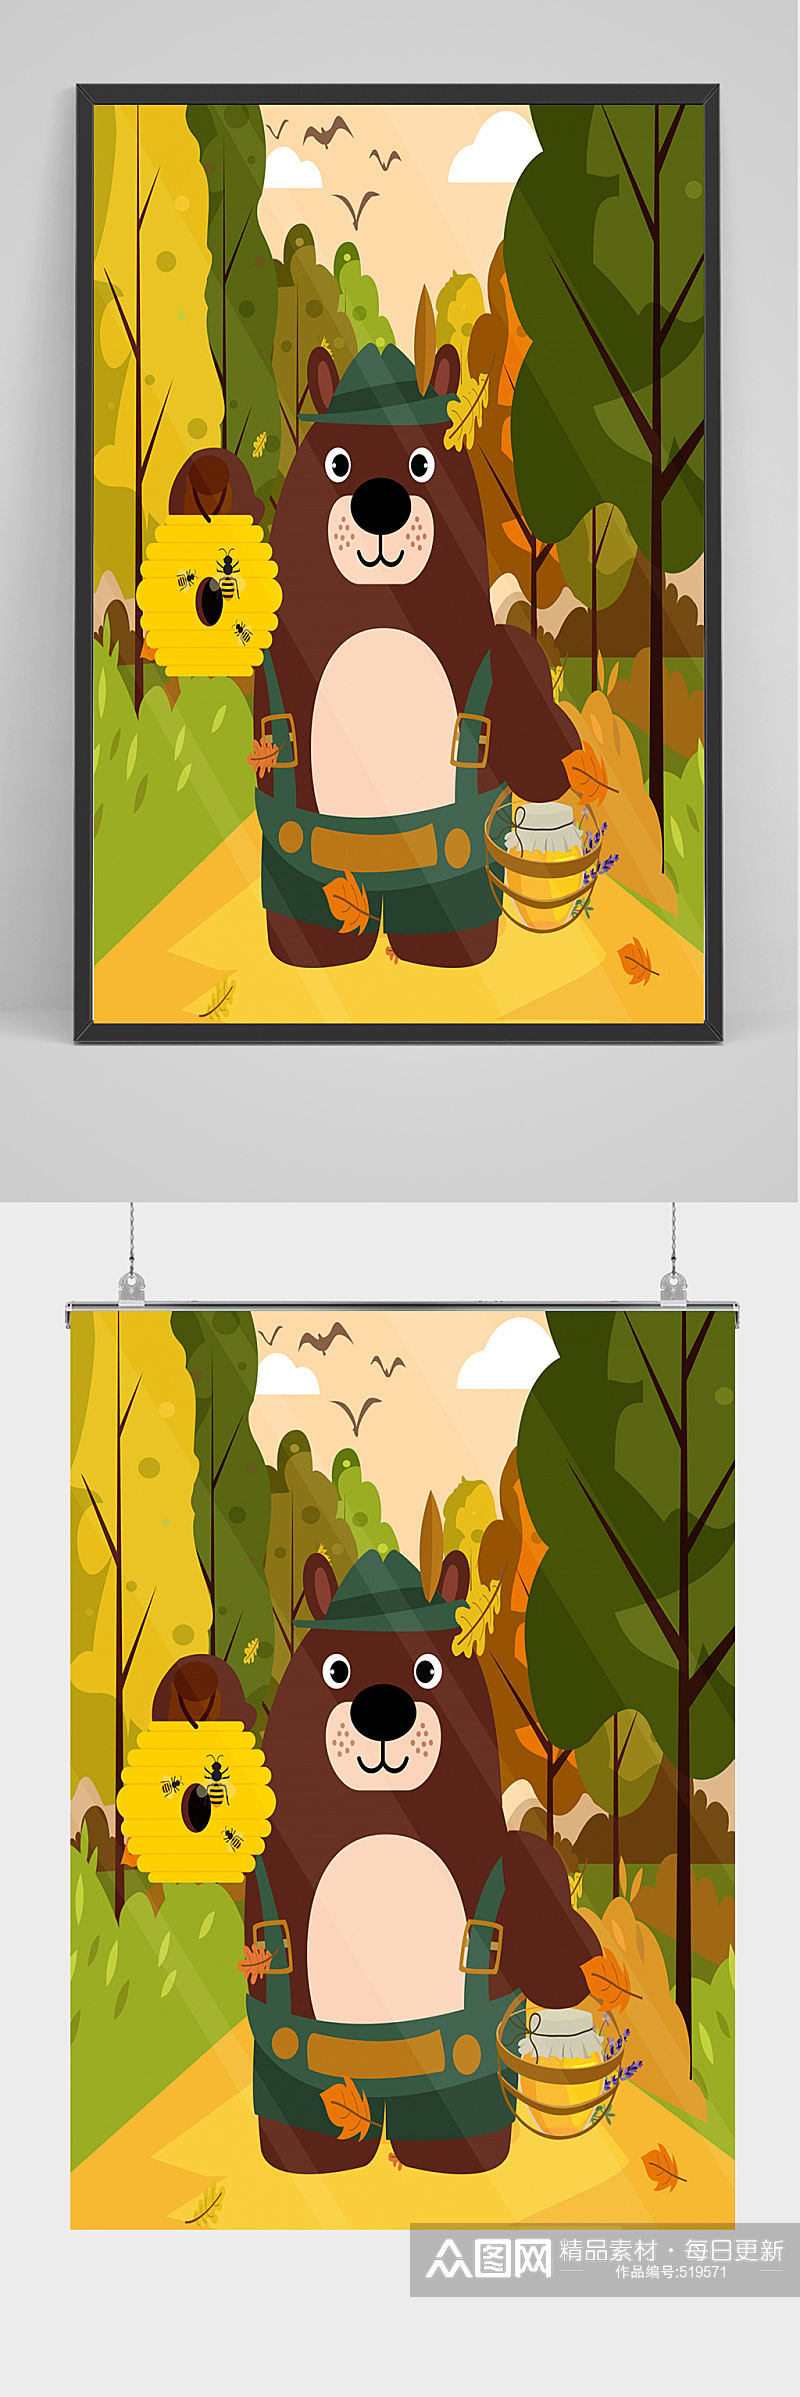 卡通矢量狗熊和蜂蜜背景元素设计素材